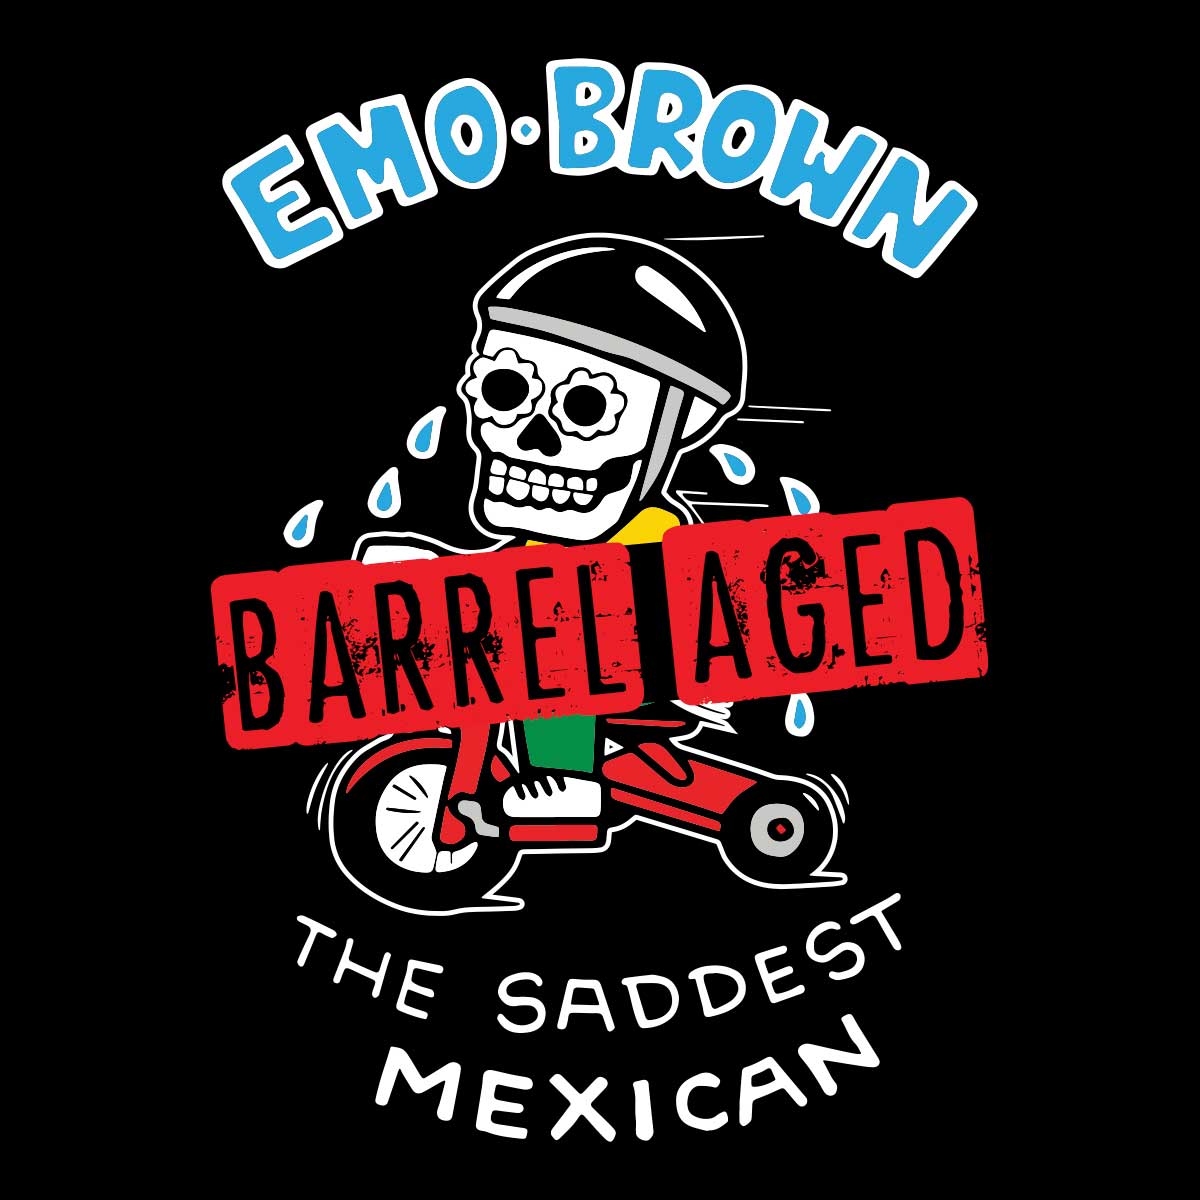 Barrel Aged Emo Brown